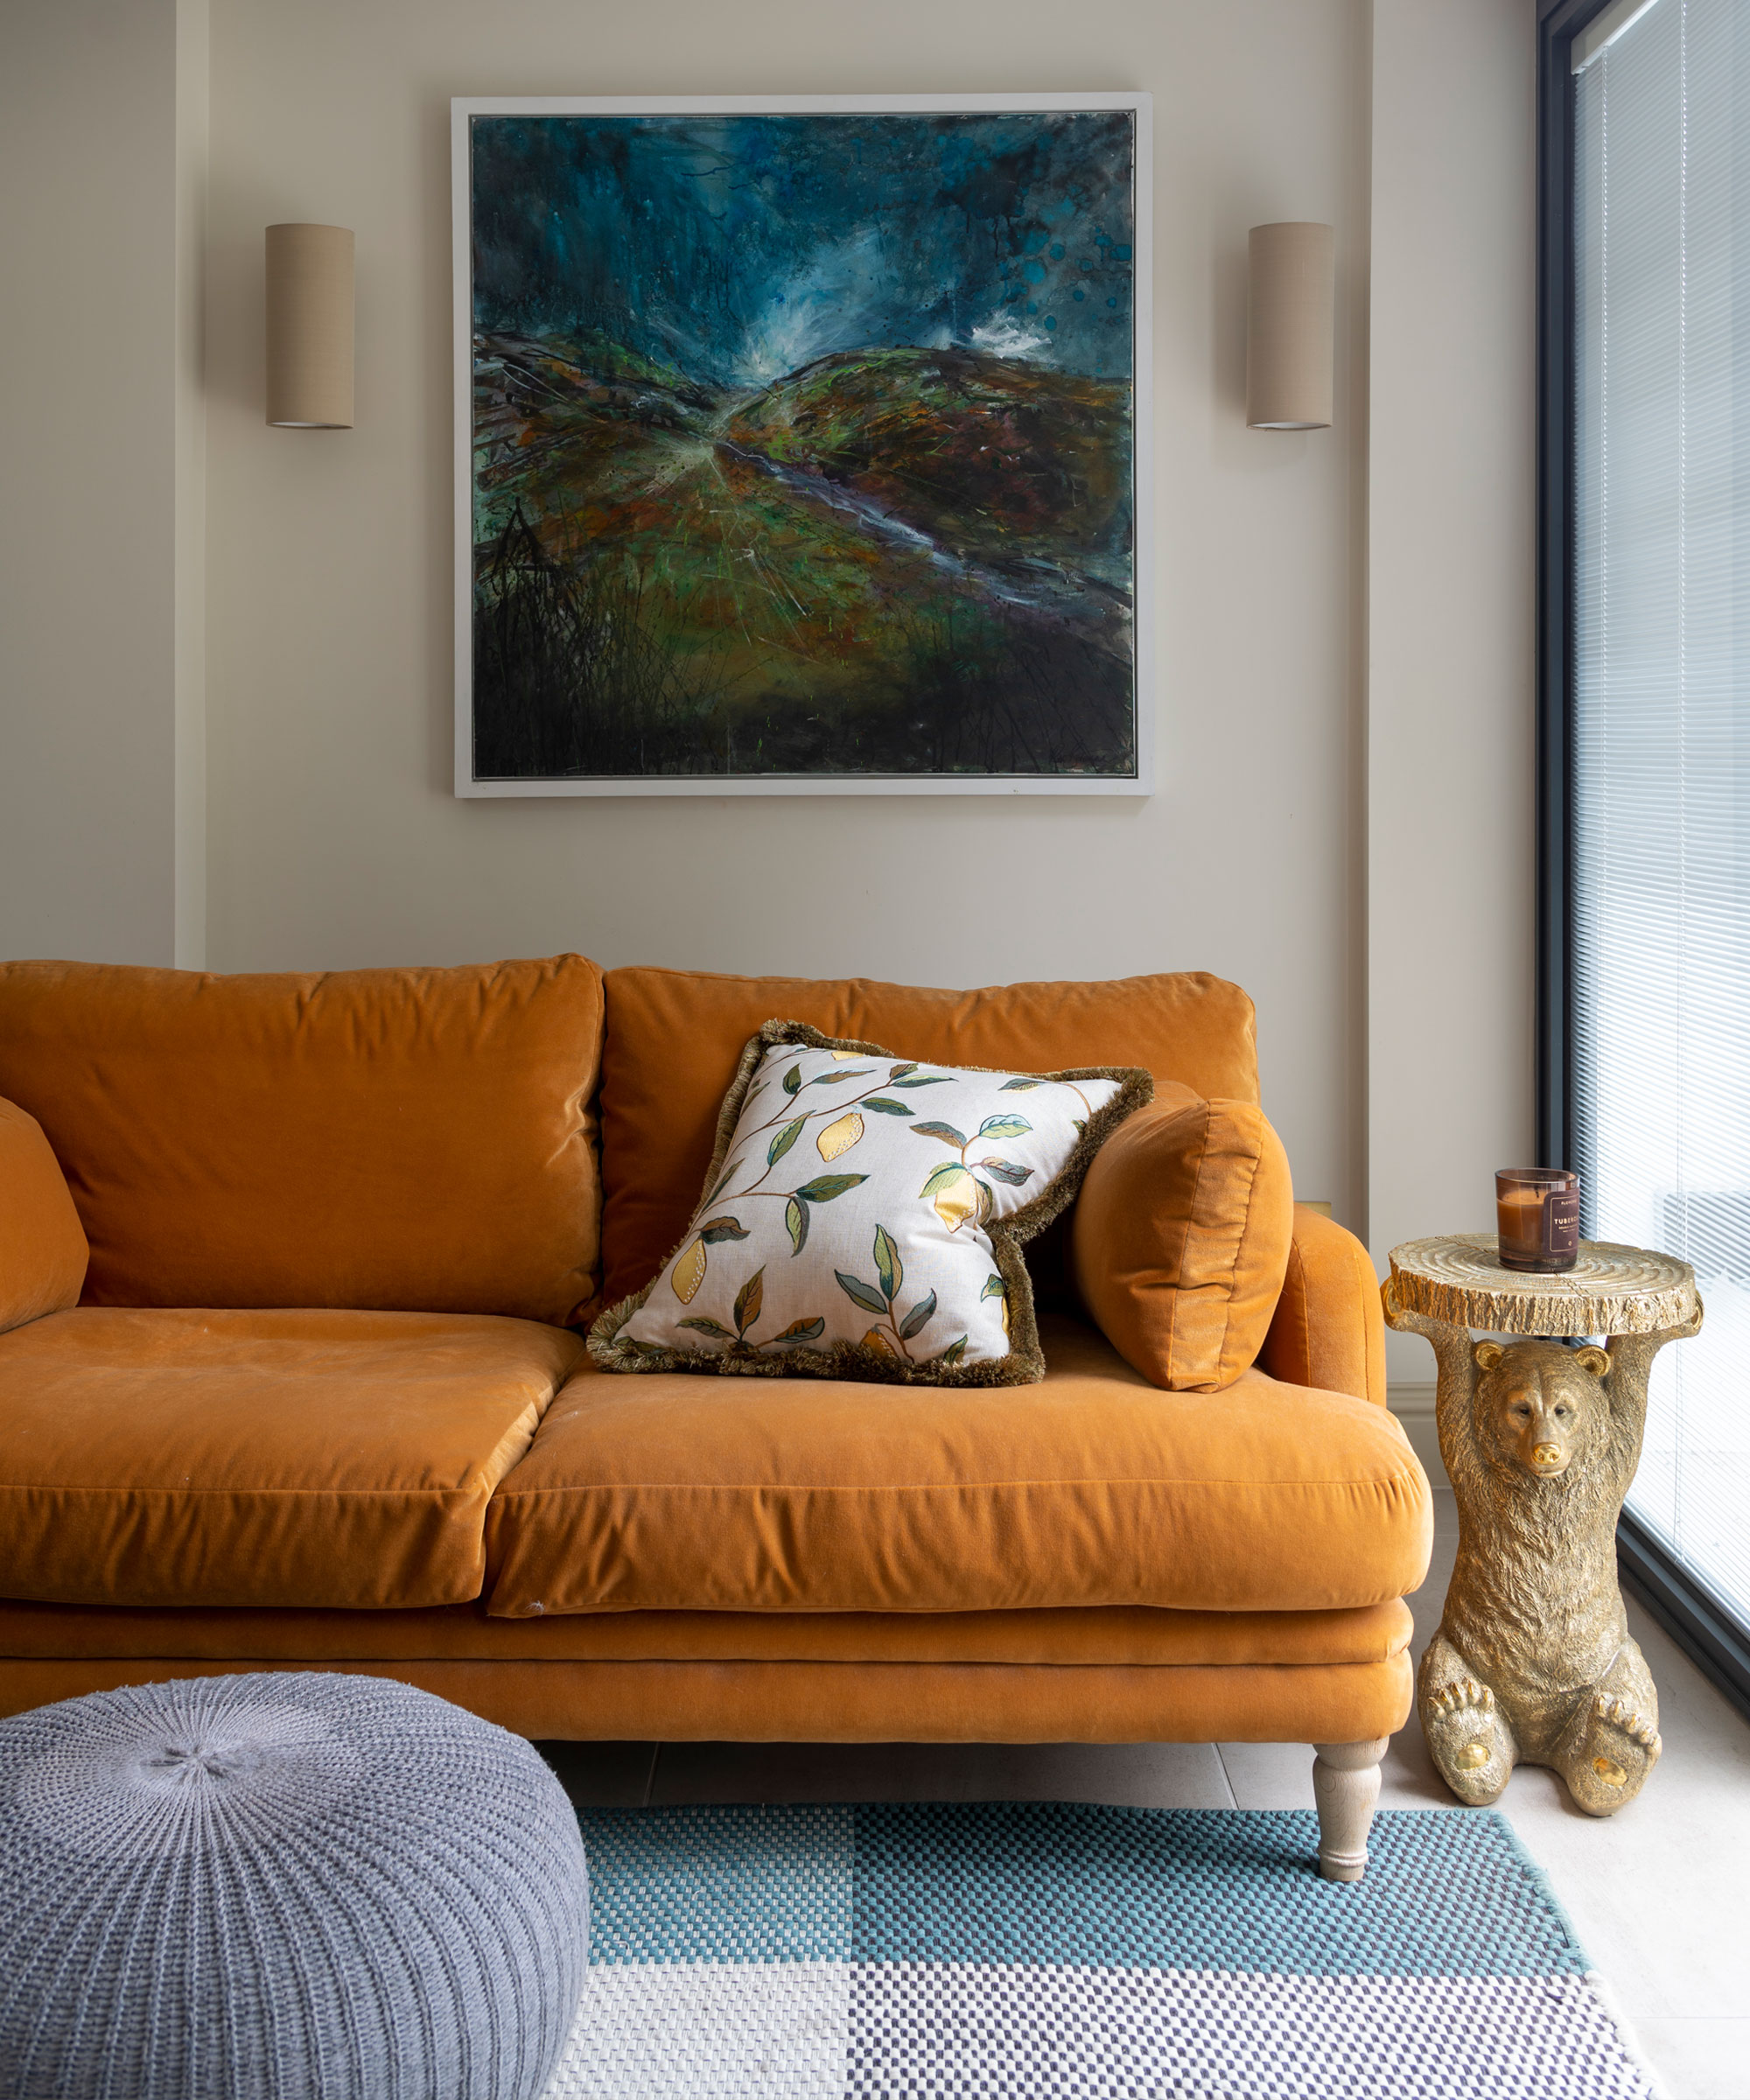 Sala de estar con un acogedor sofá naranja, obras de arte en la pared de atrás, una mesa auxiliar, una otomana redonda y una alfombra azul con motivos cuadrados